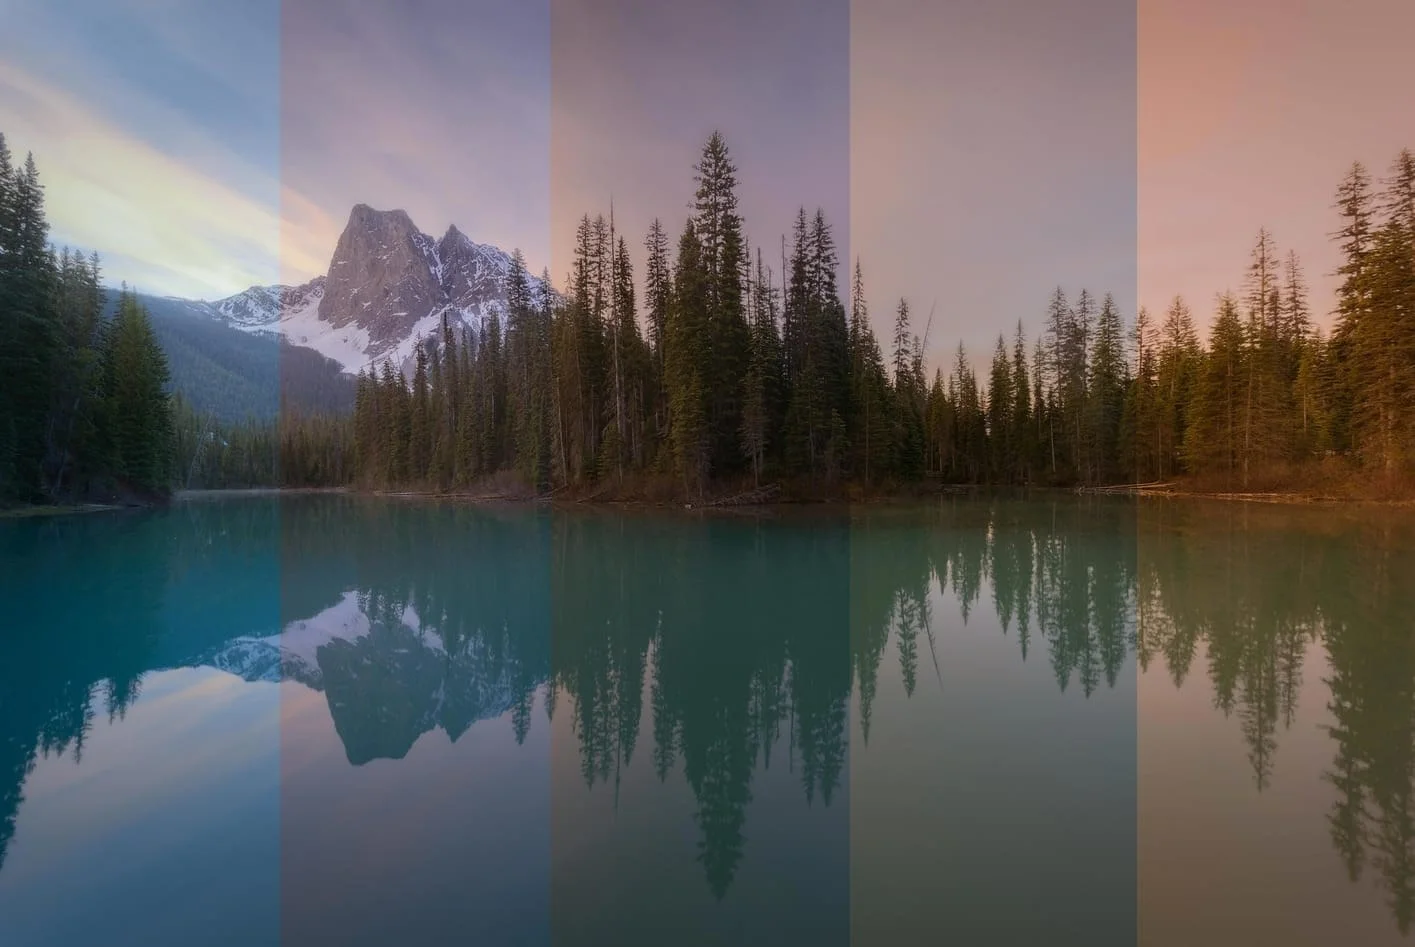 وایت بالانس باعث متعادل کردن رنگ تصویر می شود.